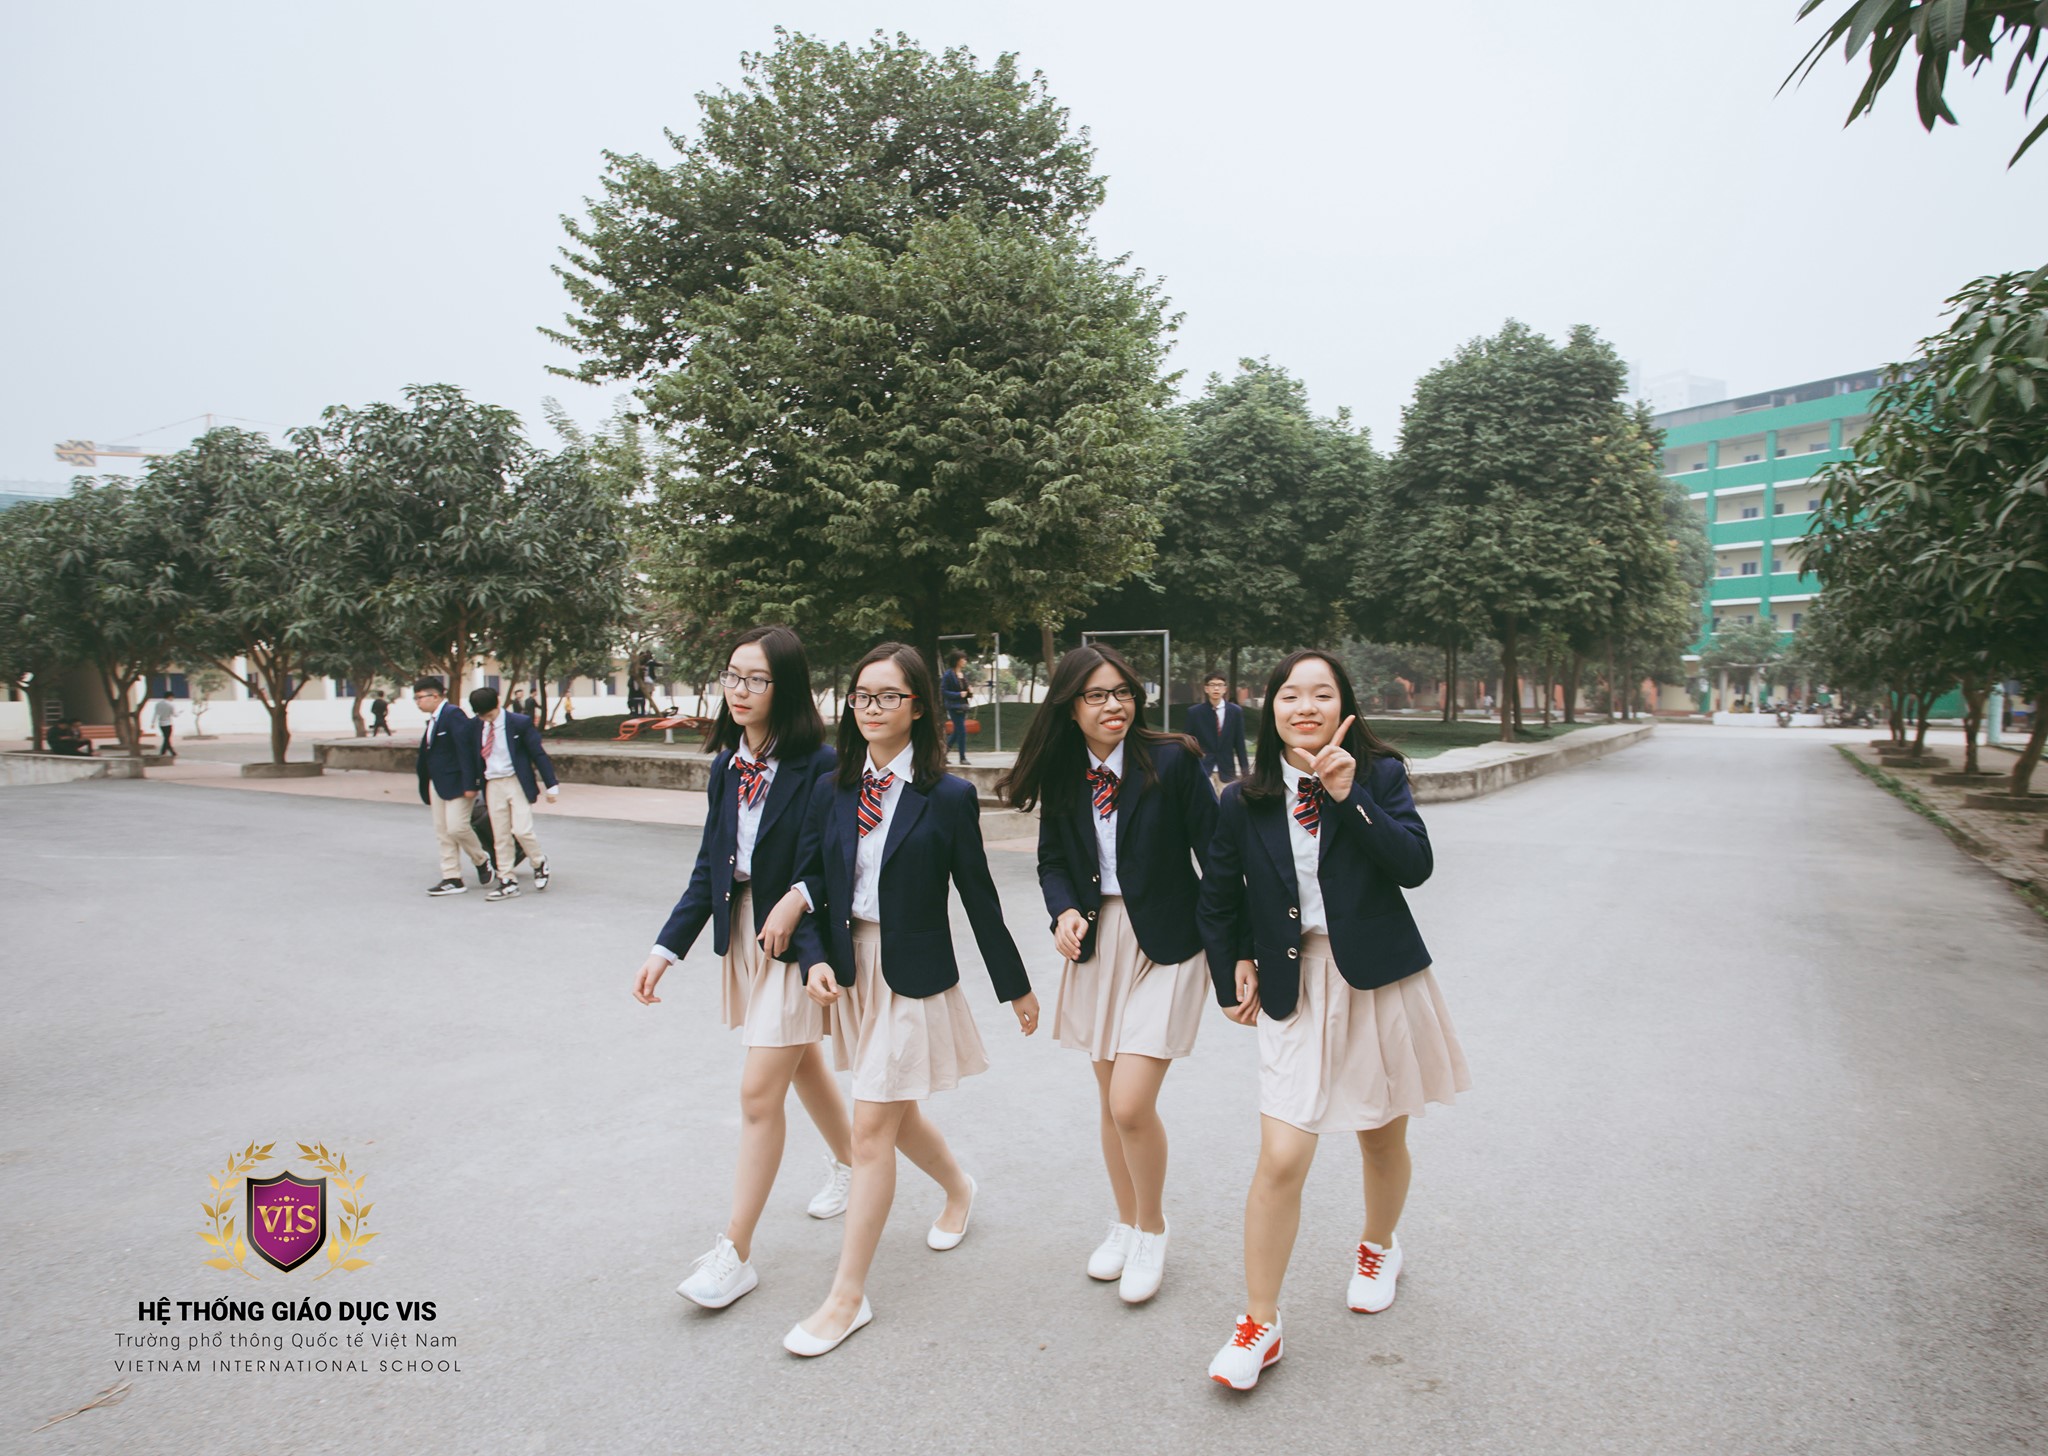 Trường phổ thông Quốc tế Việt Nam ảnh 2